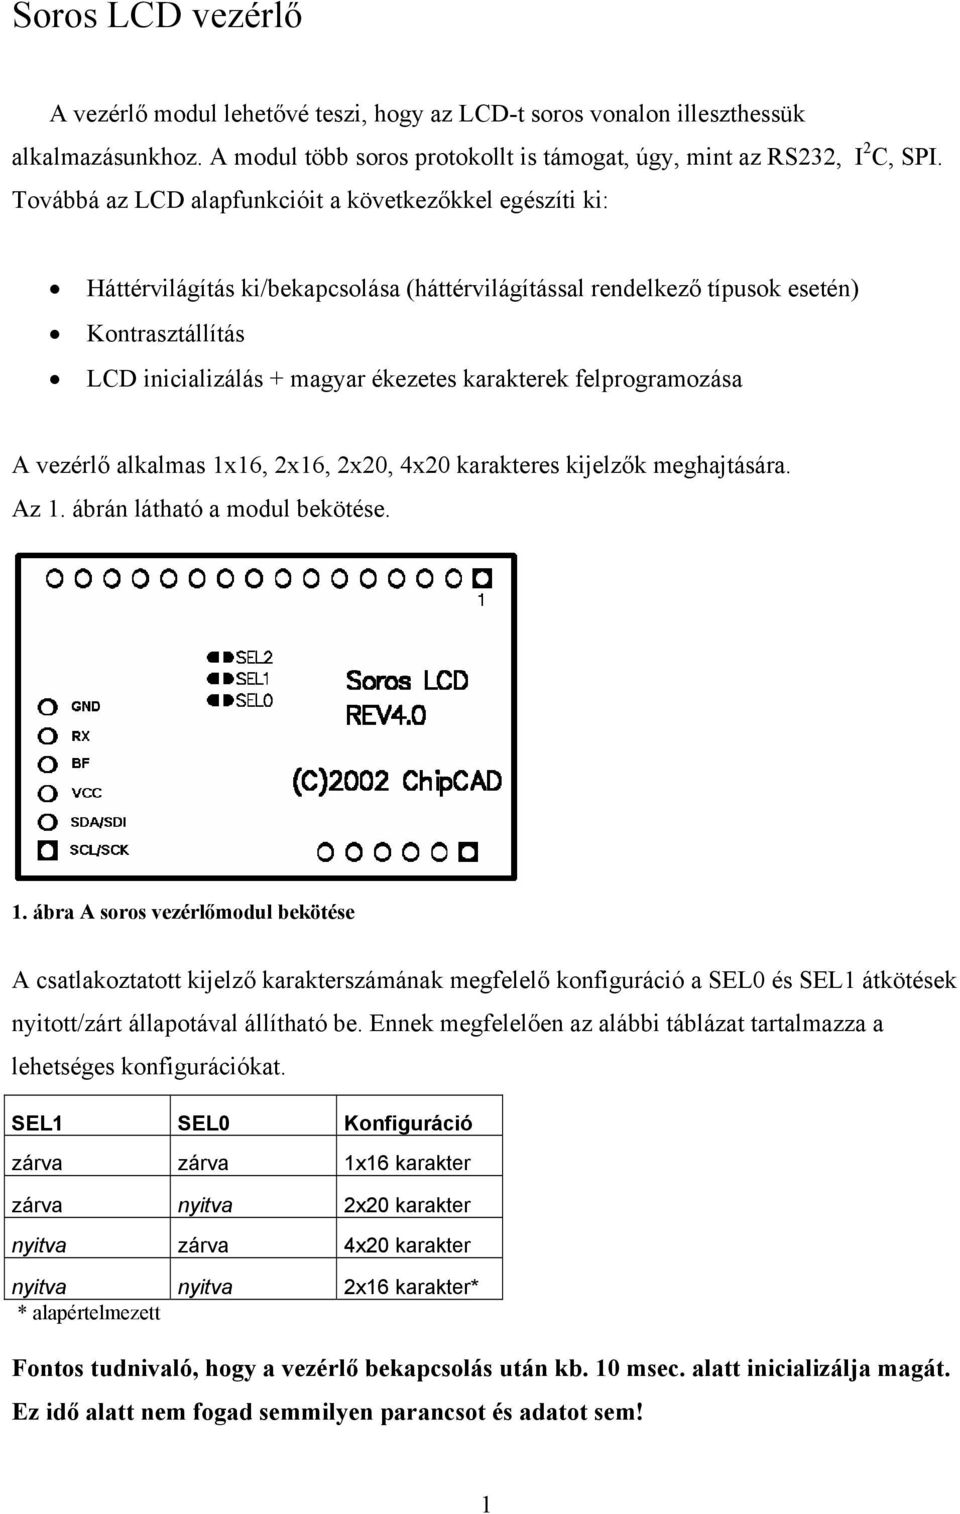 A vezérlő alkalmas 1x16, 2x16, 2x20, 4x20 karakteres kijelzők meghajtására.  Az 1. ábrán látható a modul bekötése. - PDF Free Download